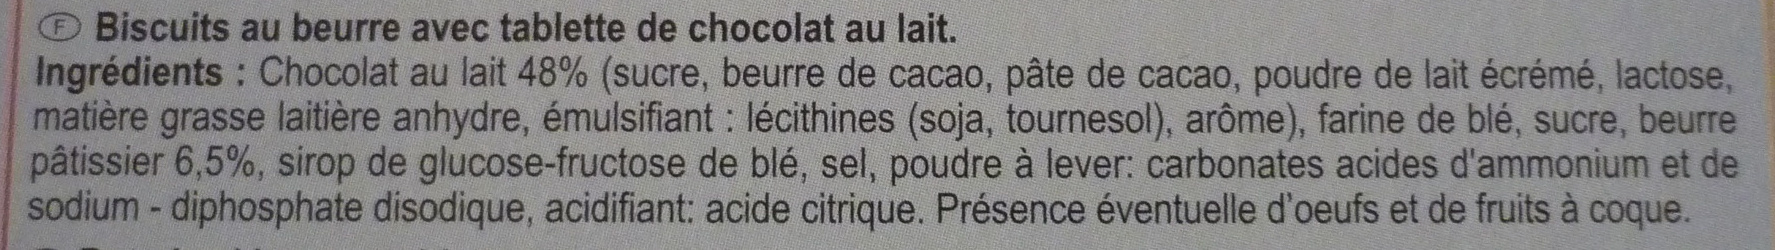 POCKET LE PETIT BEURRE TABLETTE Chocolat au lait - Ingrédients